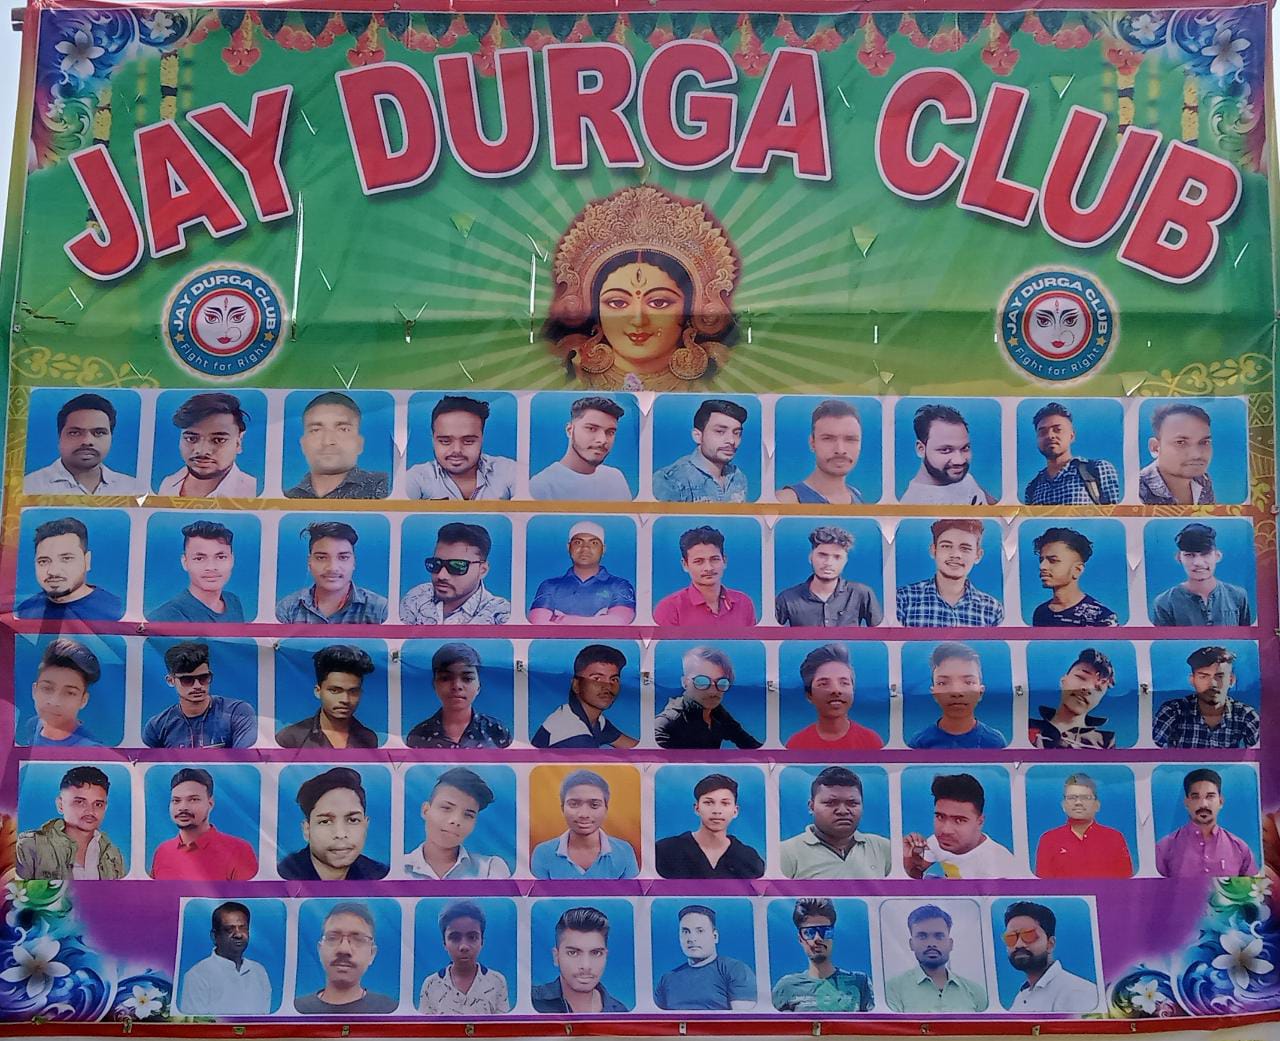 JAY DURGA CLUB,KHARIDASAHI, CHANDOL